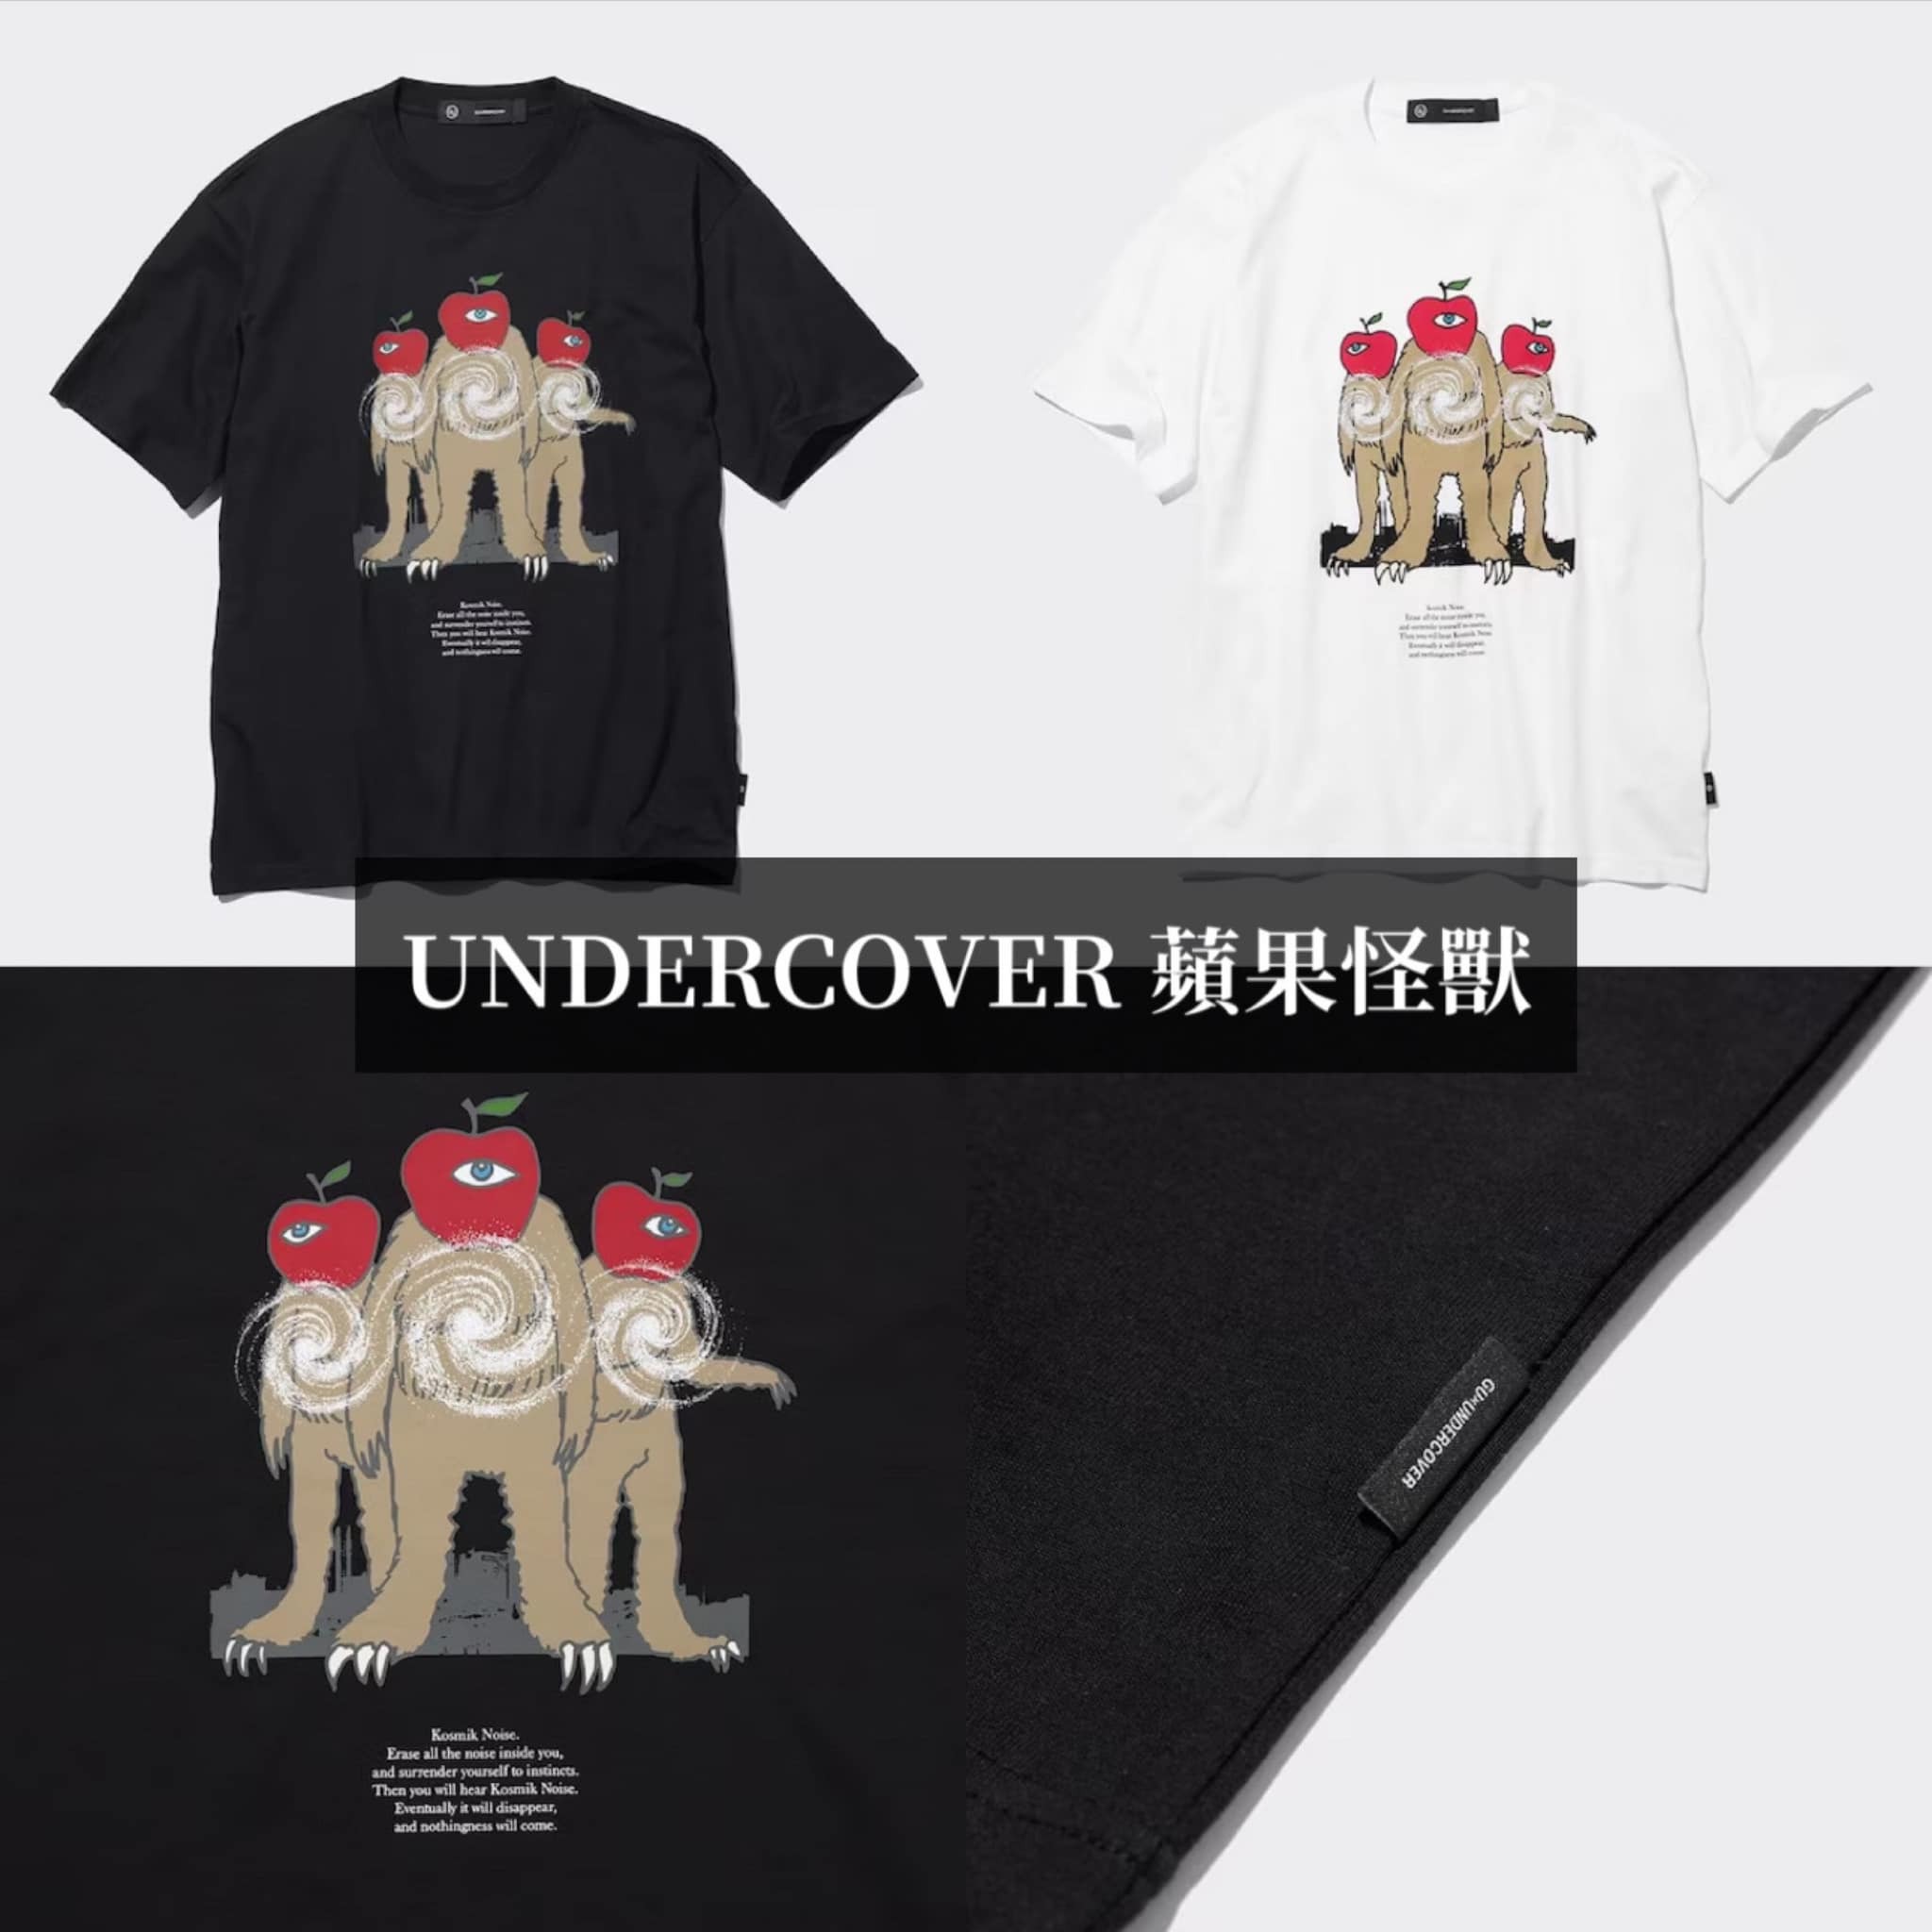 日本GU x UNDERCOVER 聯名系列服飾/包包